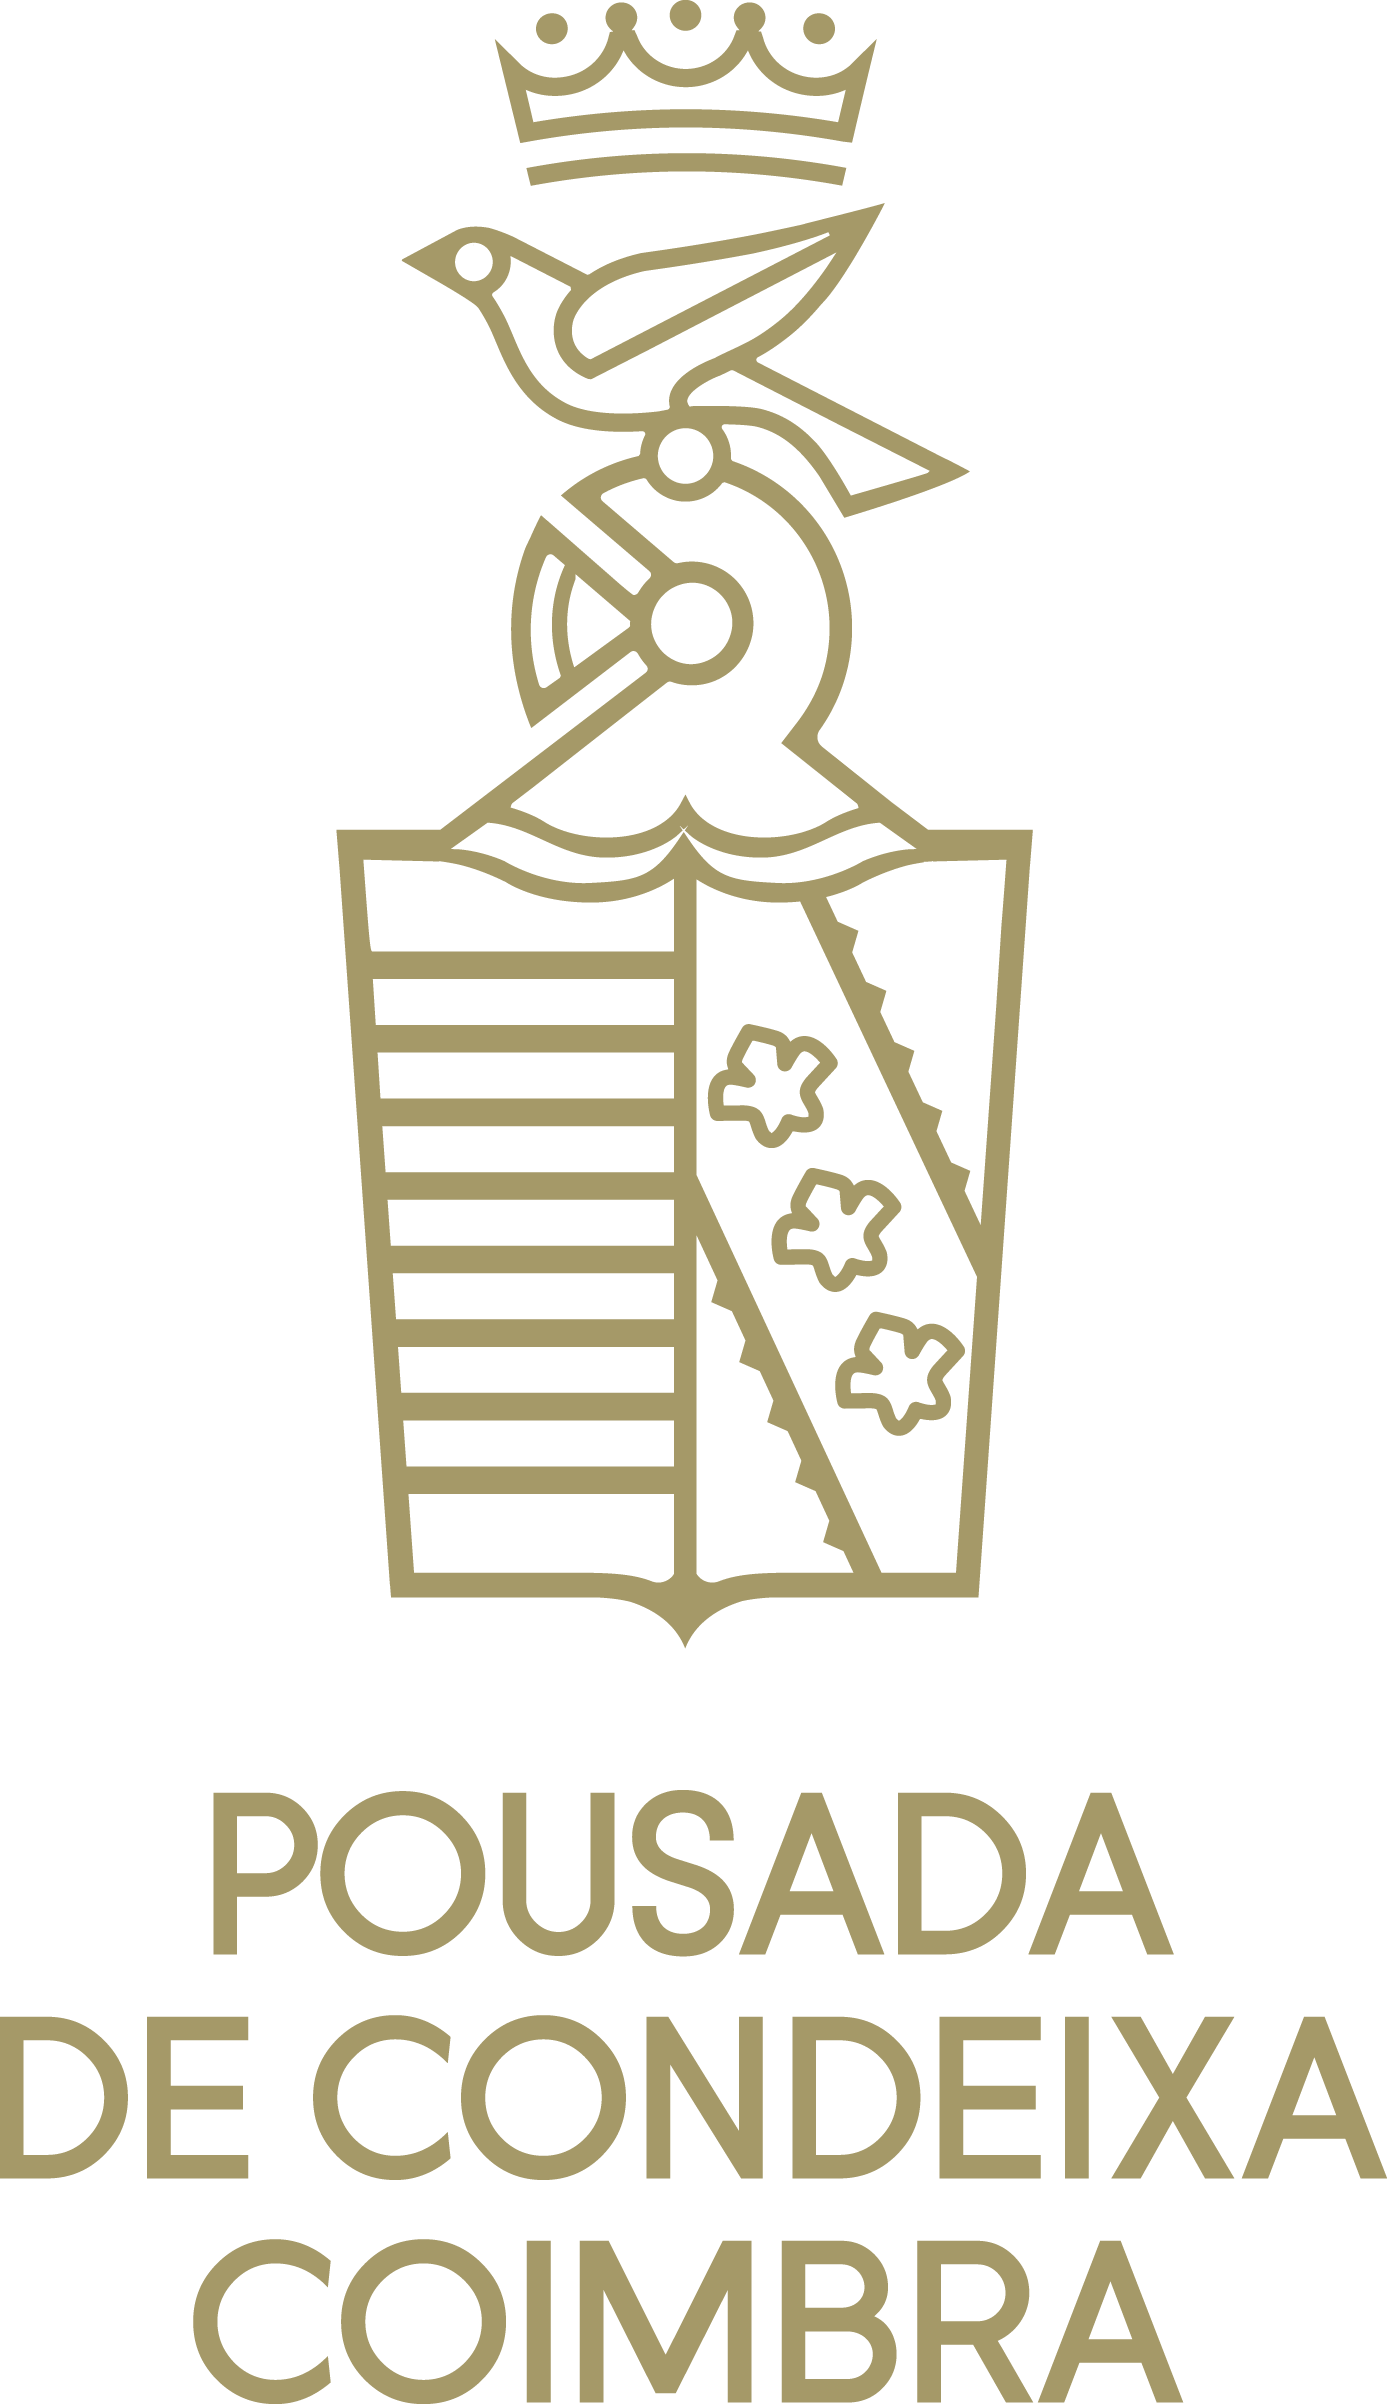 Logo Pousada de Condeixa Coimbra